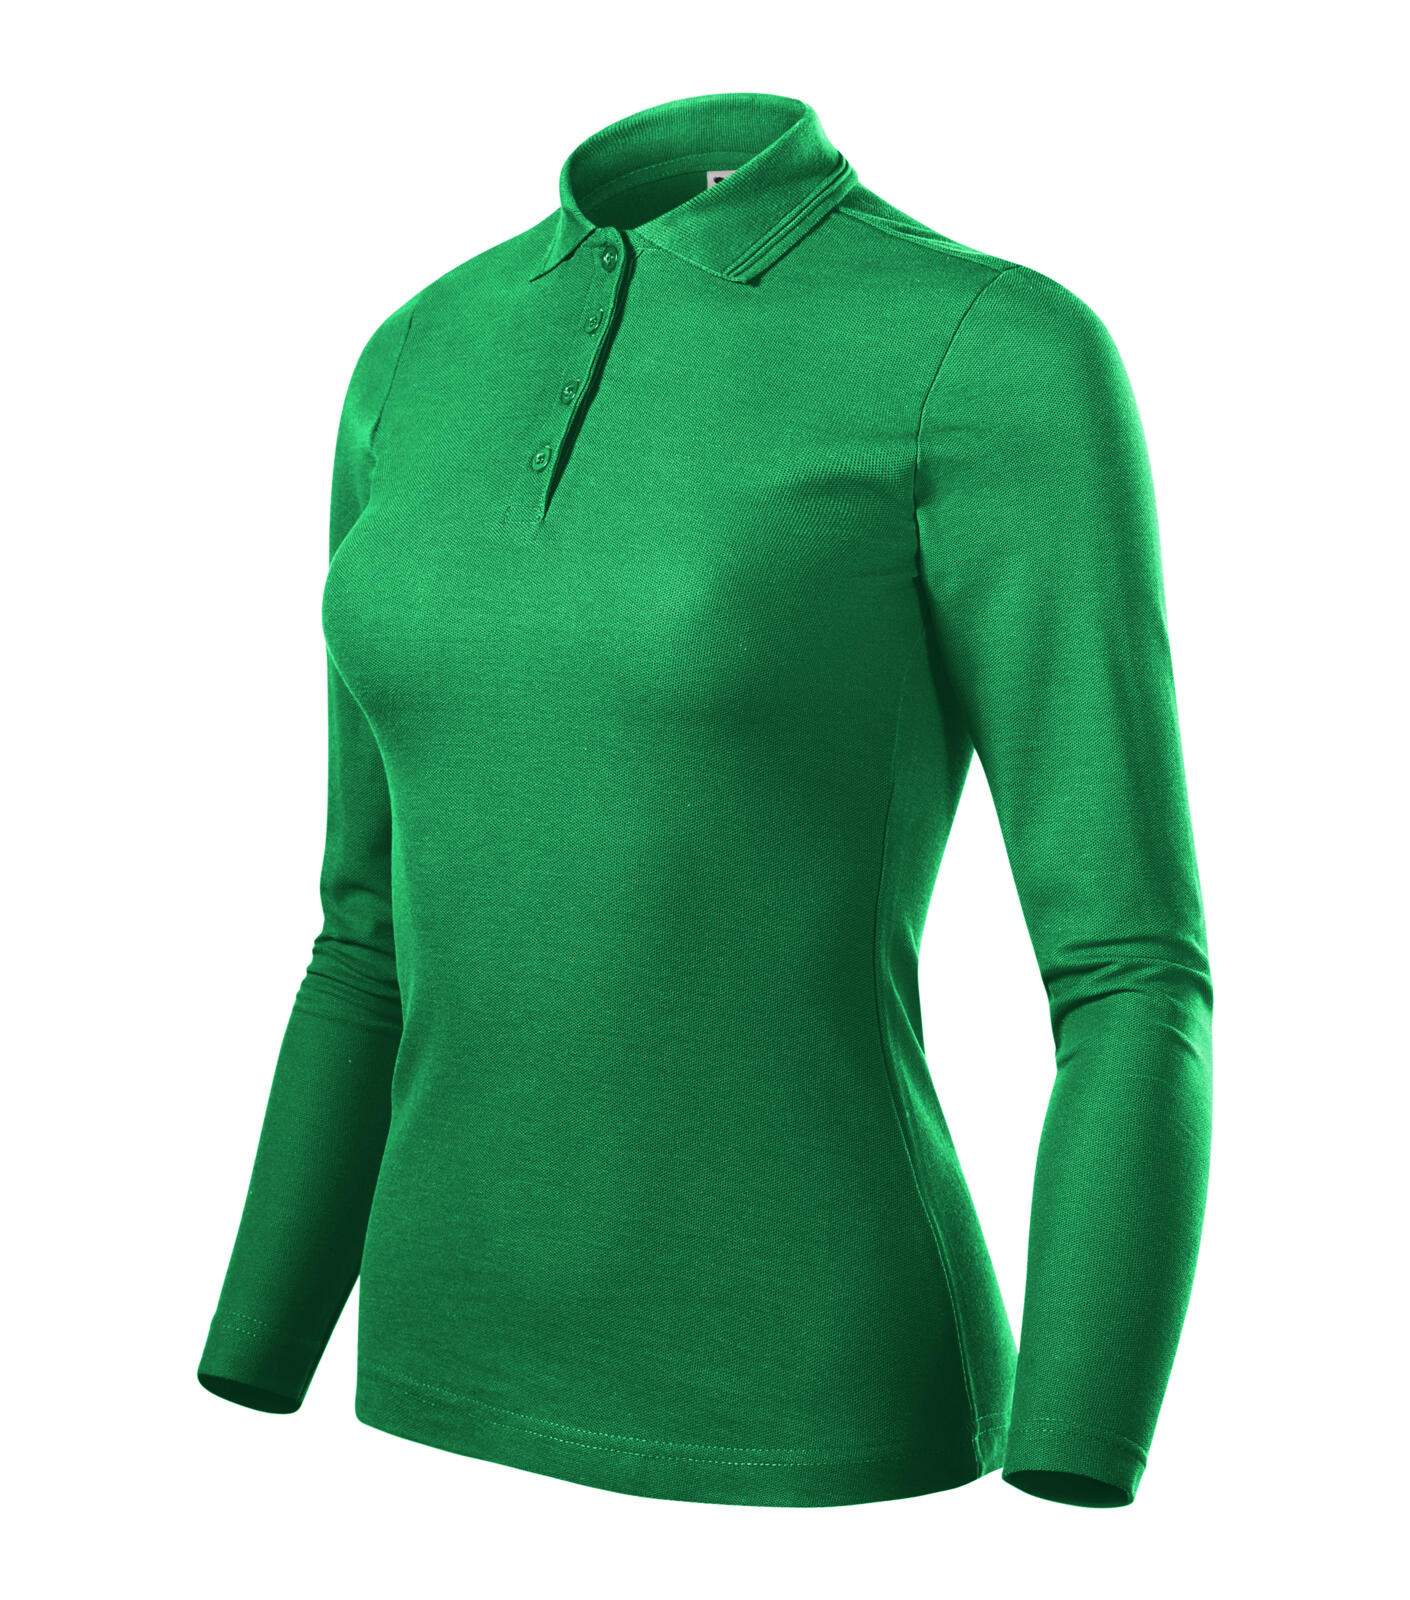 Pique Polo LS Polokošile dámská Barva: středně zelená, Velikost: M